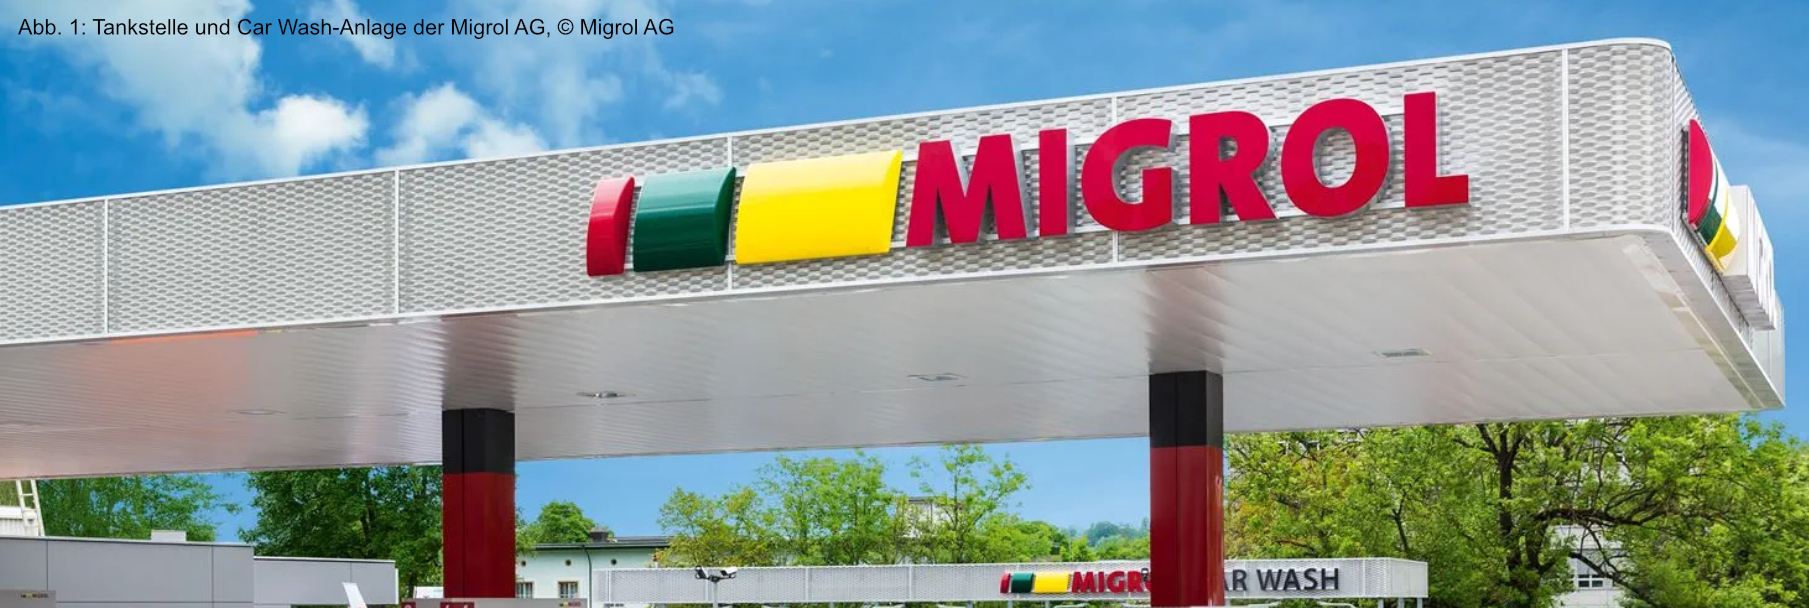 Tankstelle und Car Wash-Anlage der Migrol AG